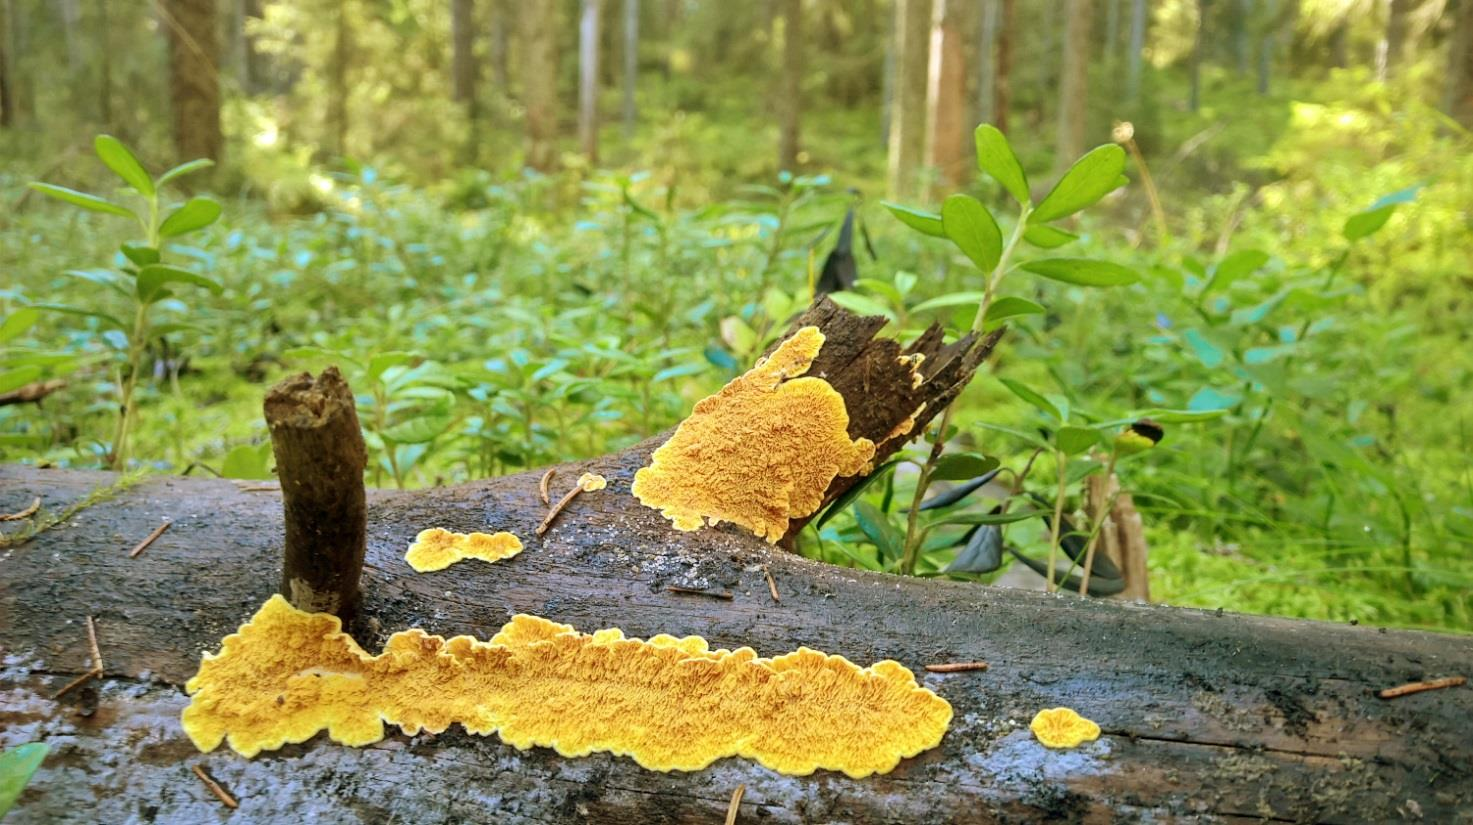 Pöyhölä Pöyhölän vanhat metsät Keurusselän länsirannalla liittyvät Haiton metsän tavoin entisen varuskunta-alueen laajoihin vanhoihin metsiin.